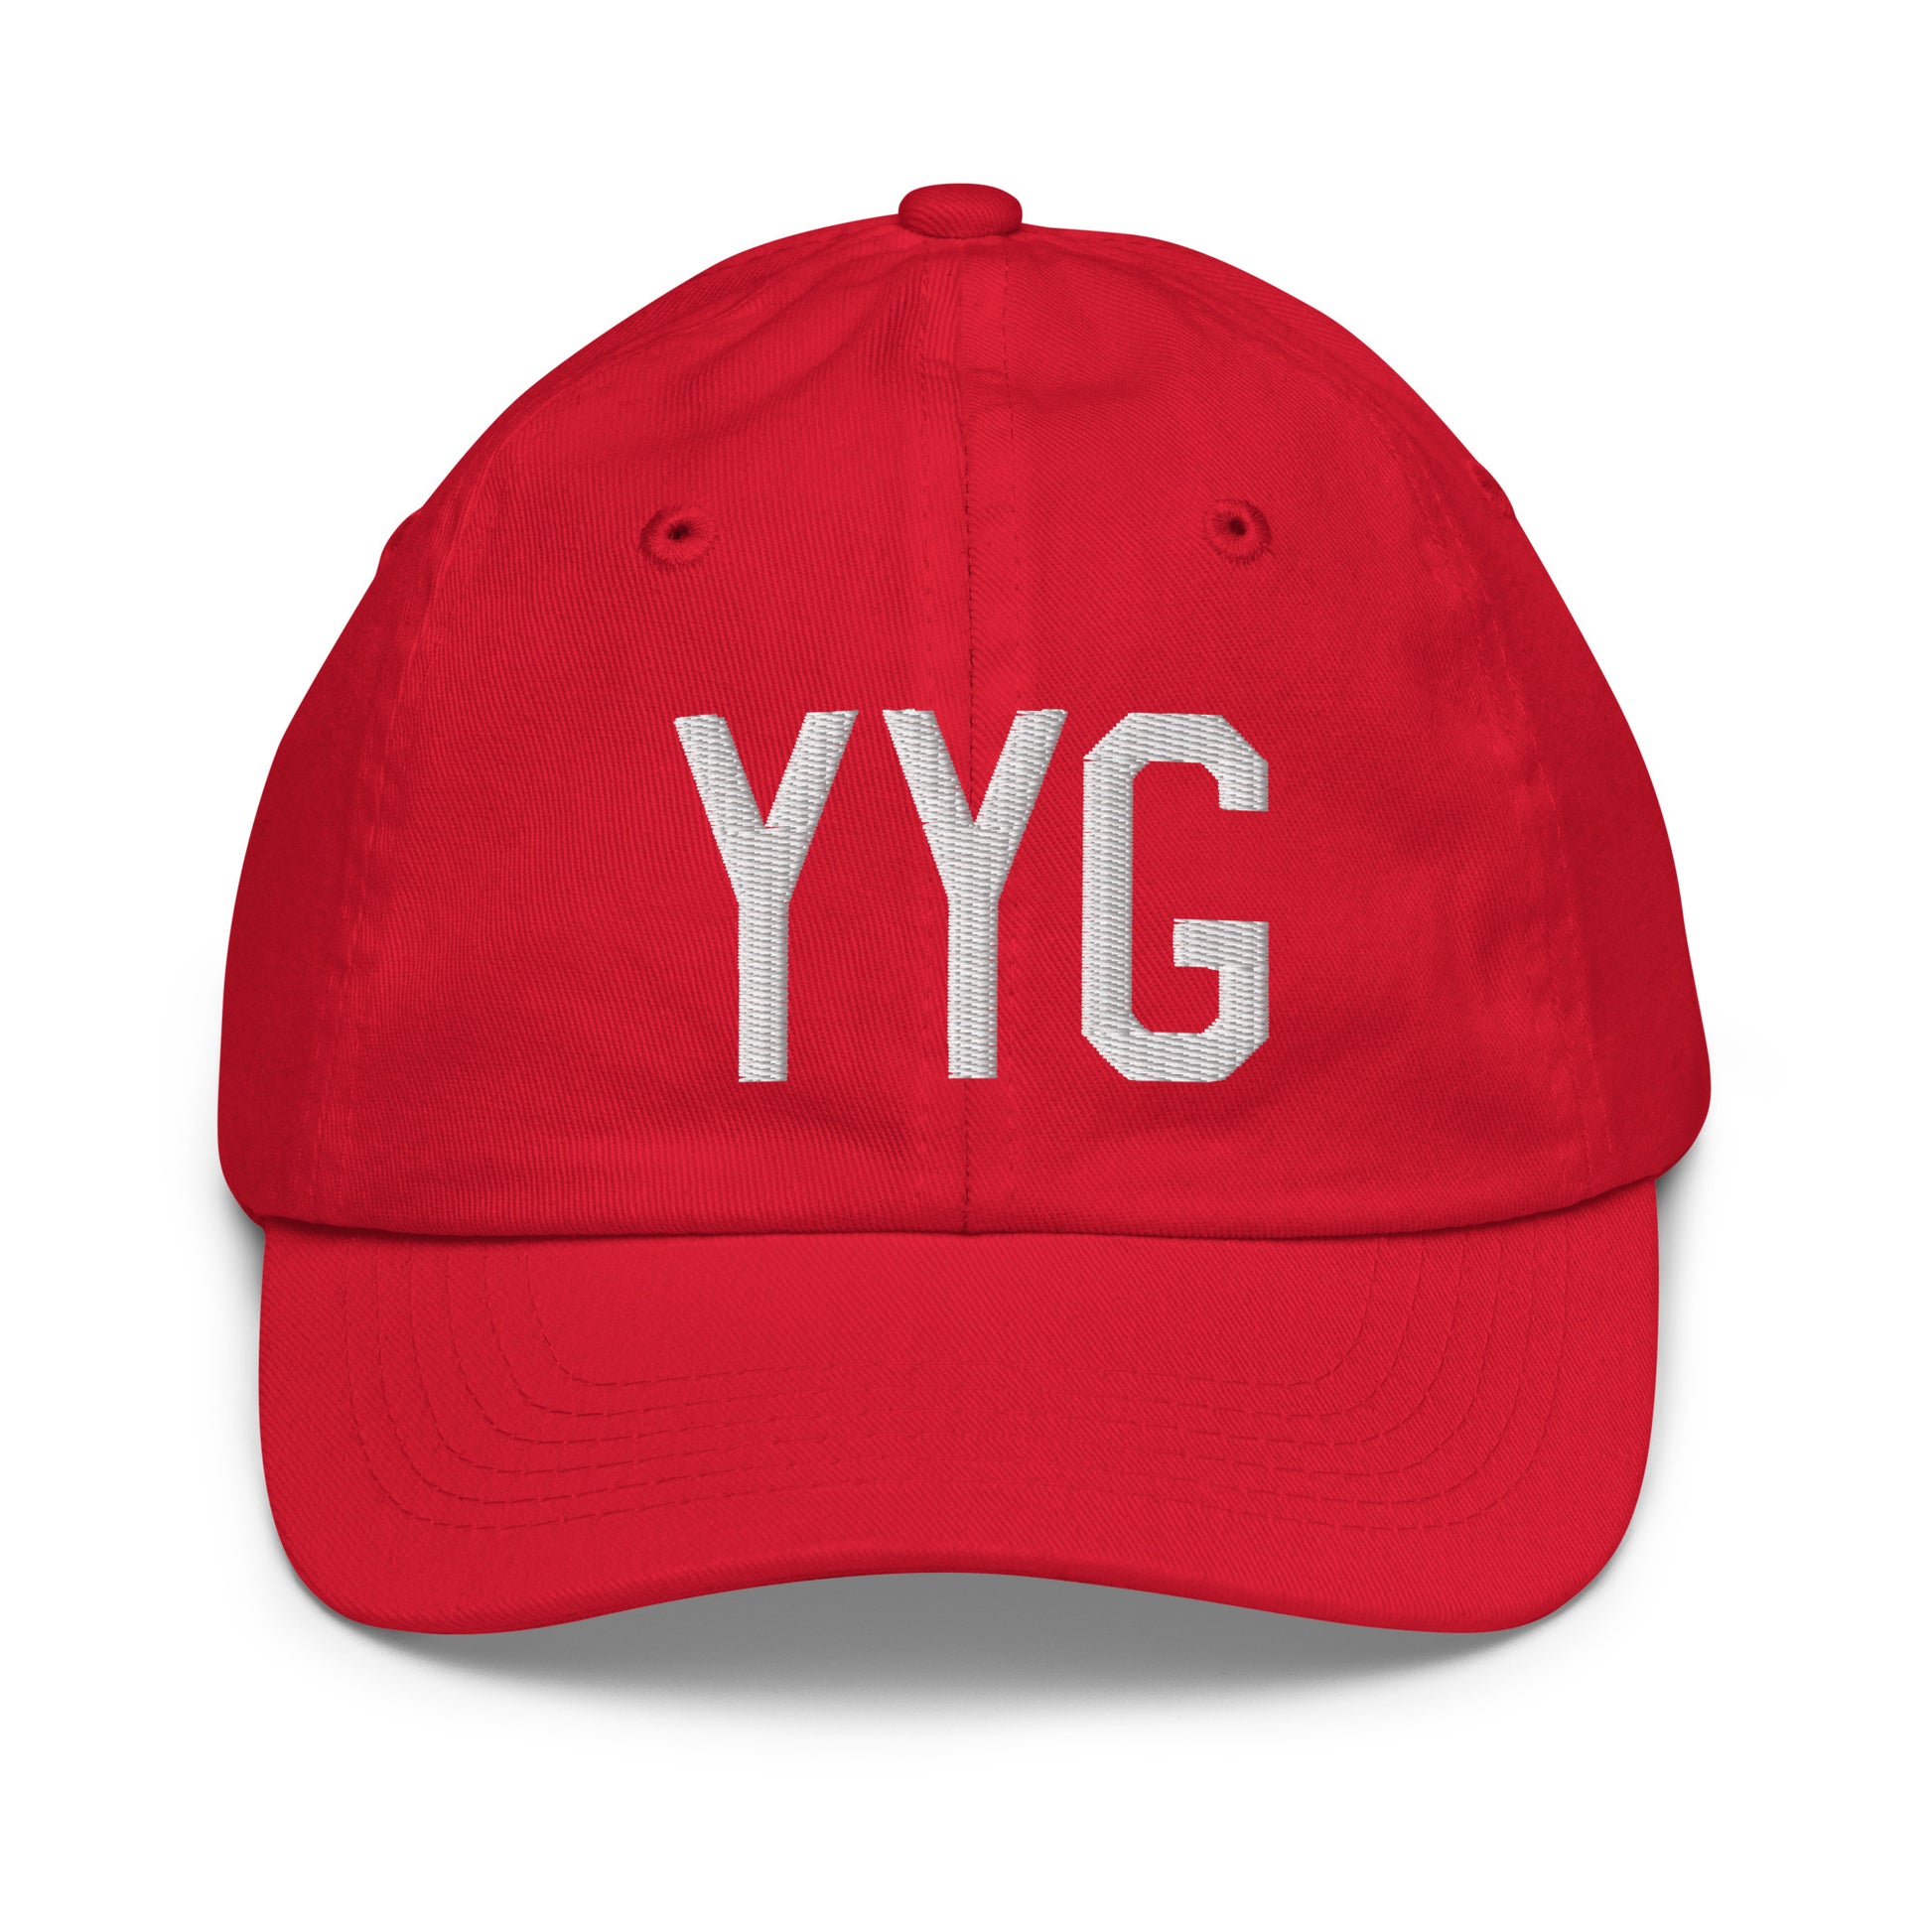 Airport Code Kid's Baseball Cap - White • YYG Charlottetown • YHM Designs - Image 17